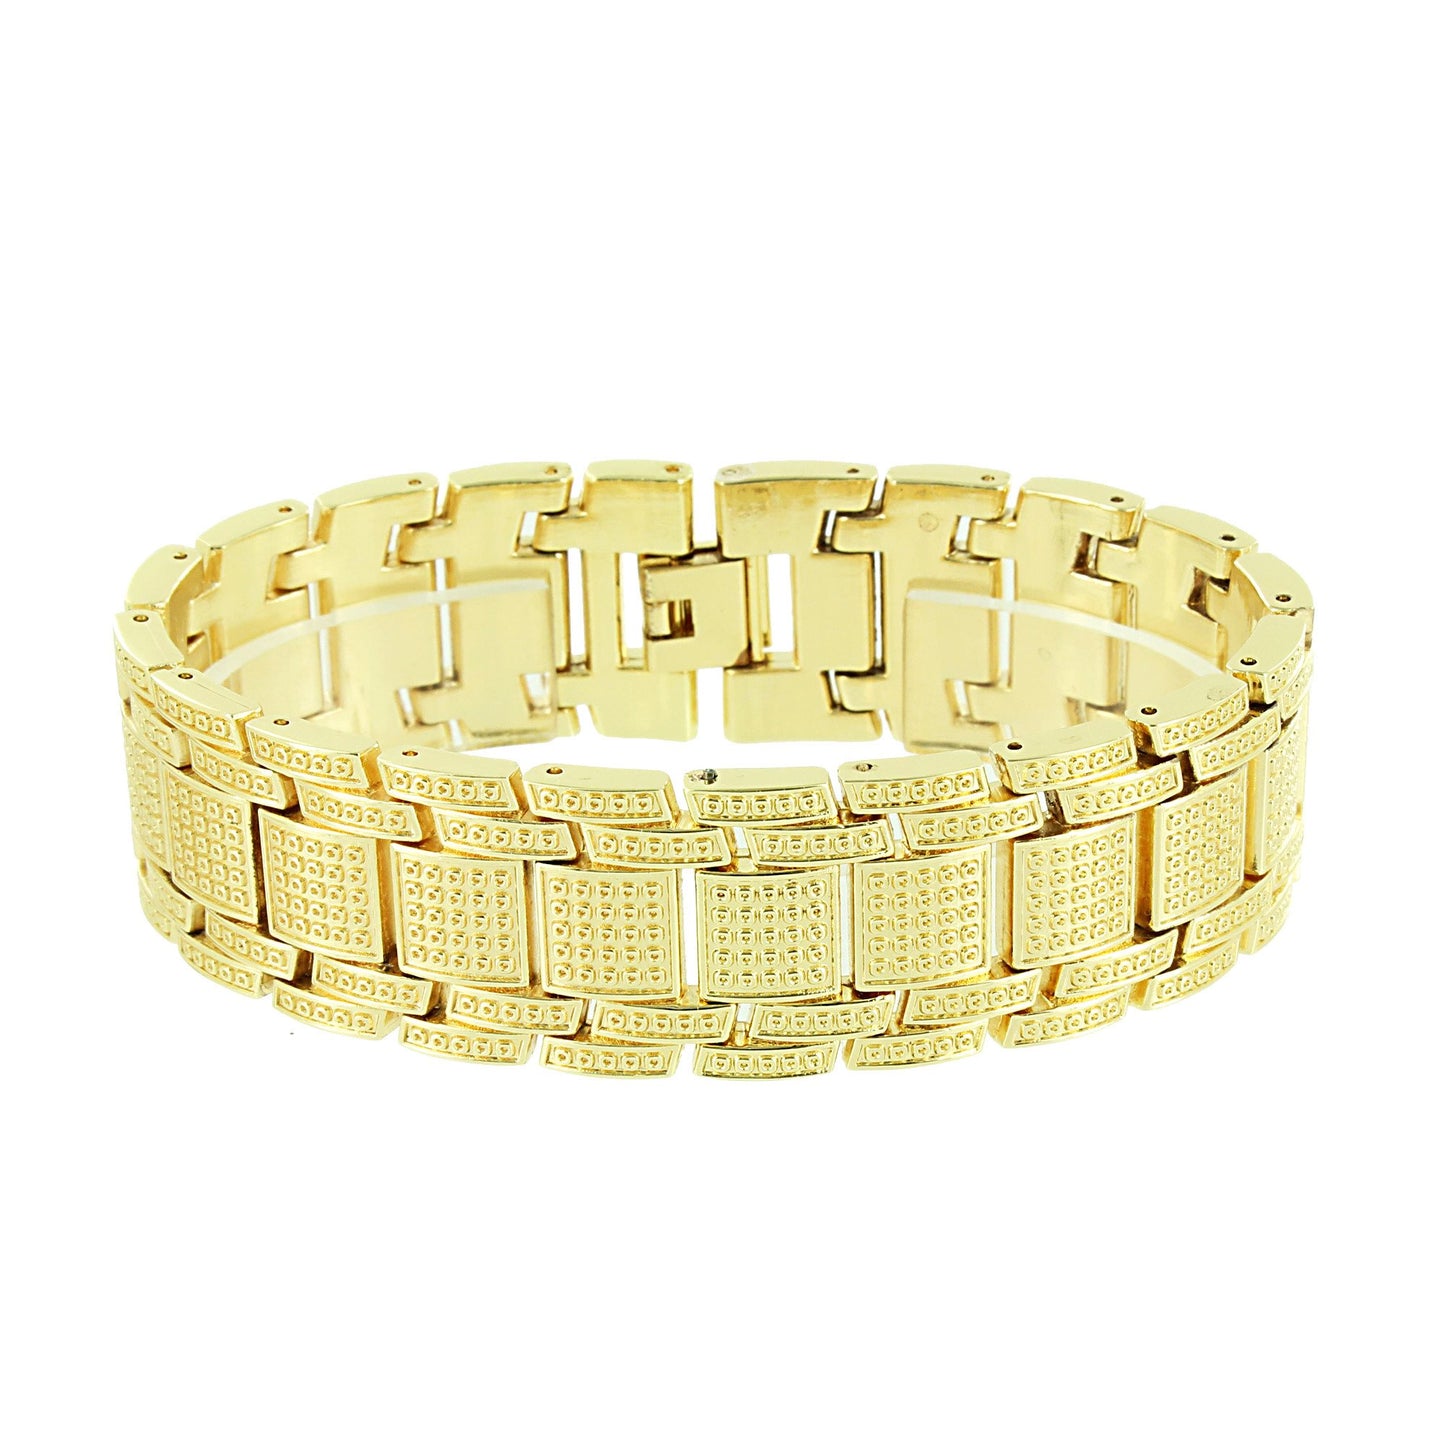 Gold Tone Watch  Canary Simulated Diamonds Matching Bracelet